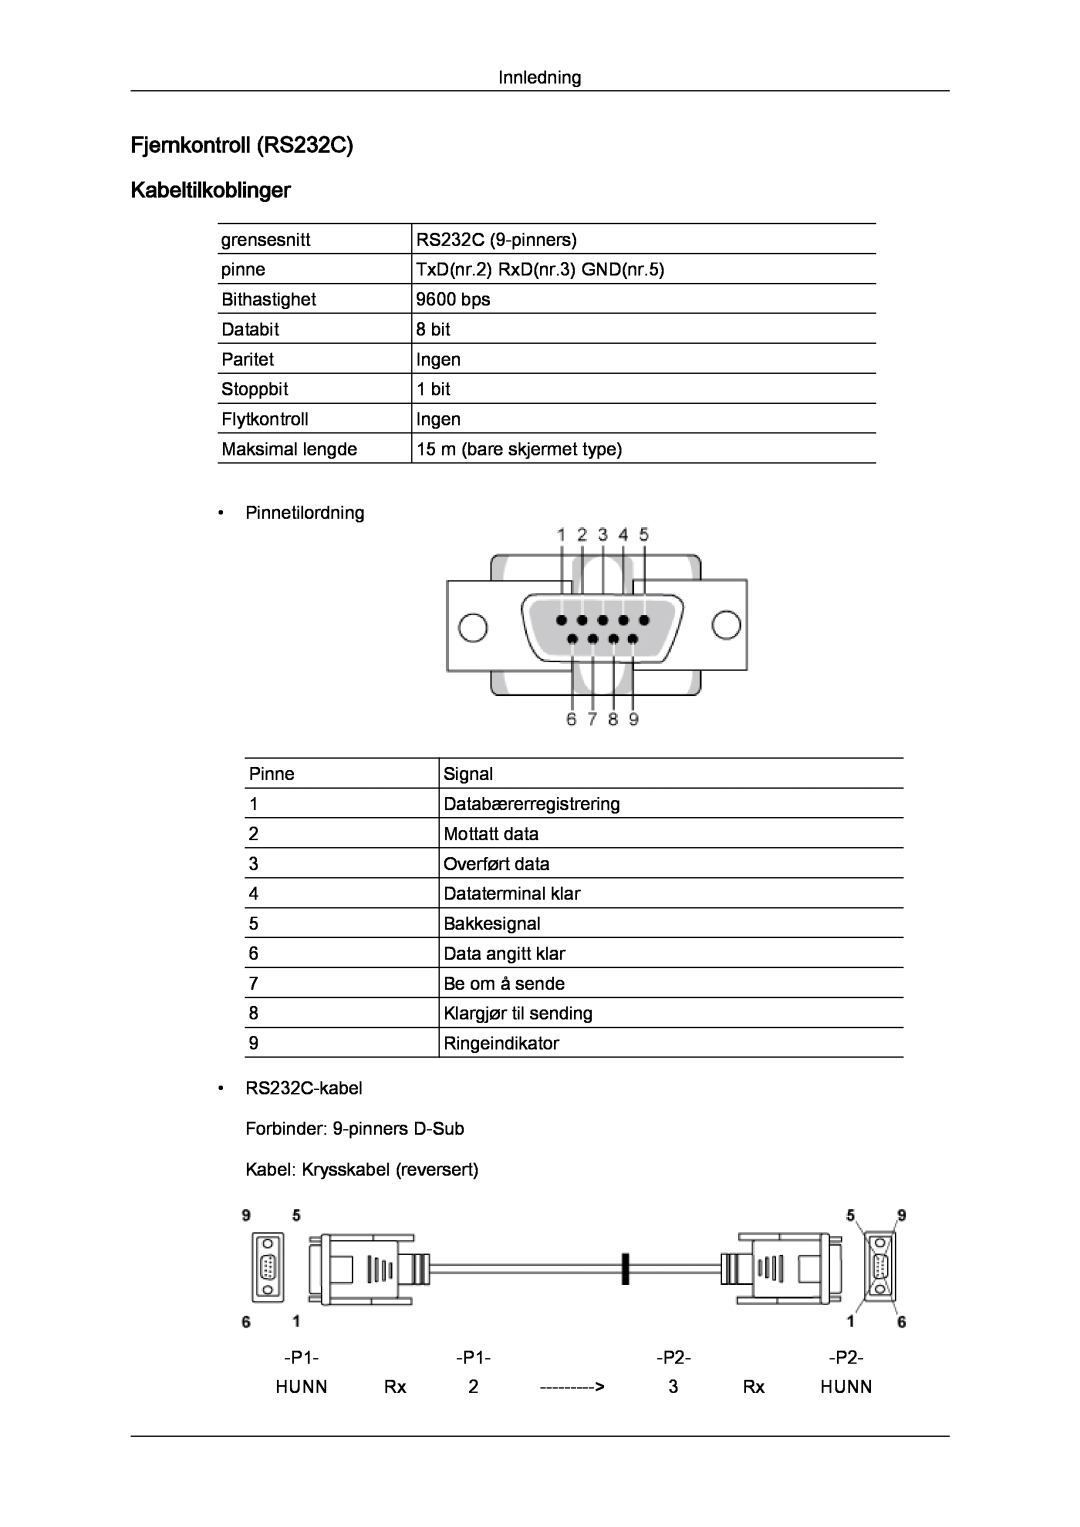 Samsung LH32CRTMBC/EN, LH32CRSMBC/EN, LH32CRSMBD/EN manual Fjernkontroll RS232C Kabeltilkoblinger 